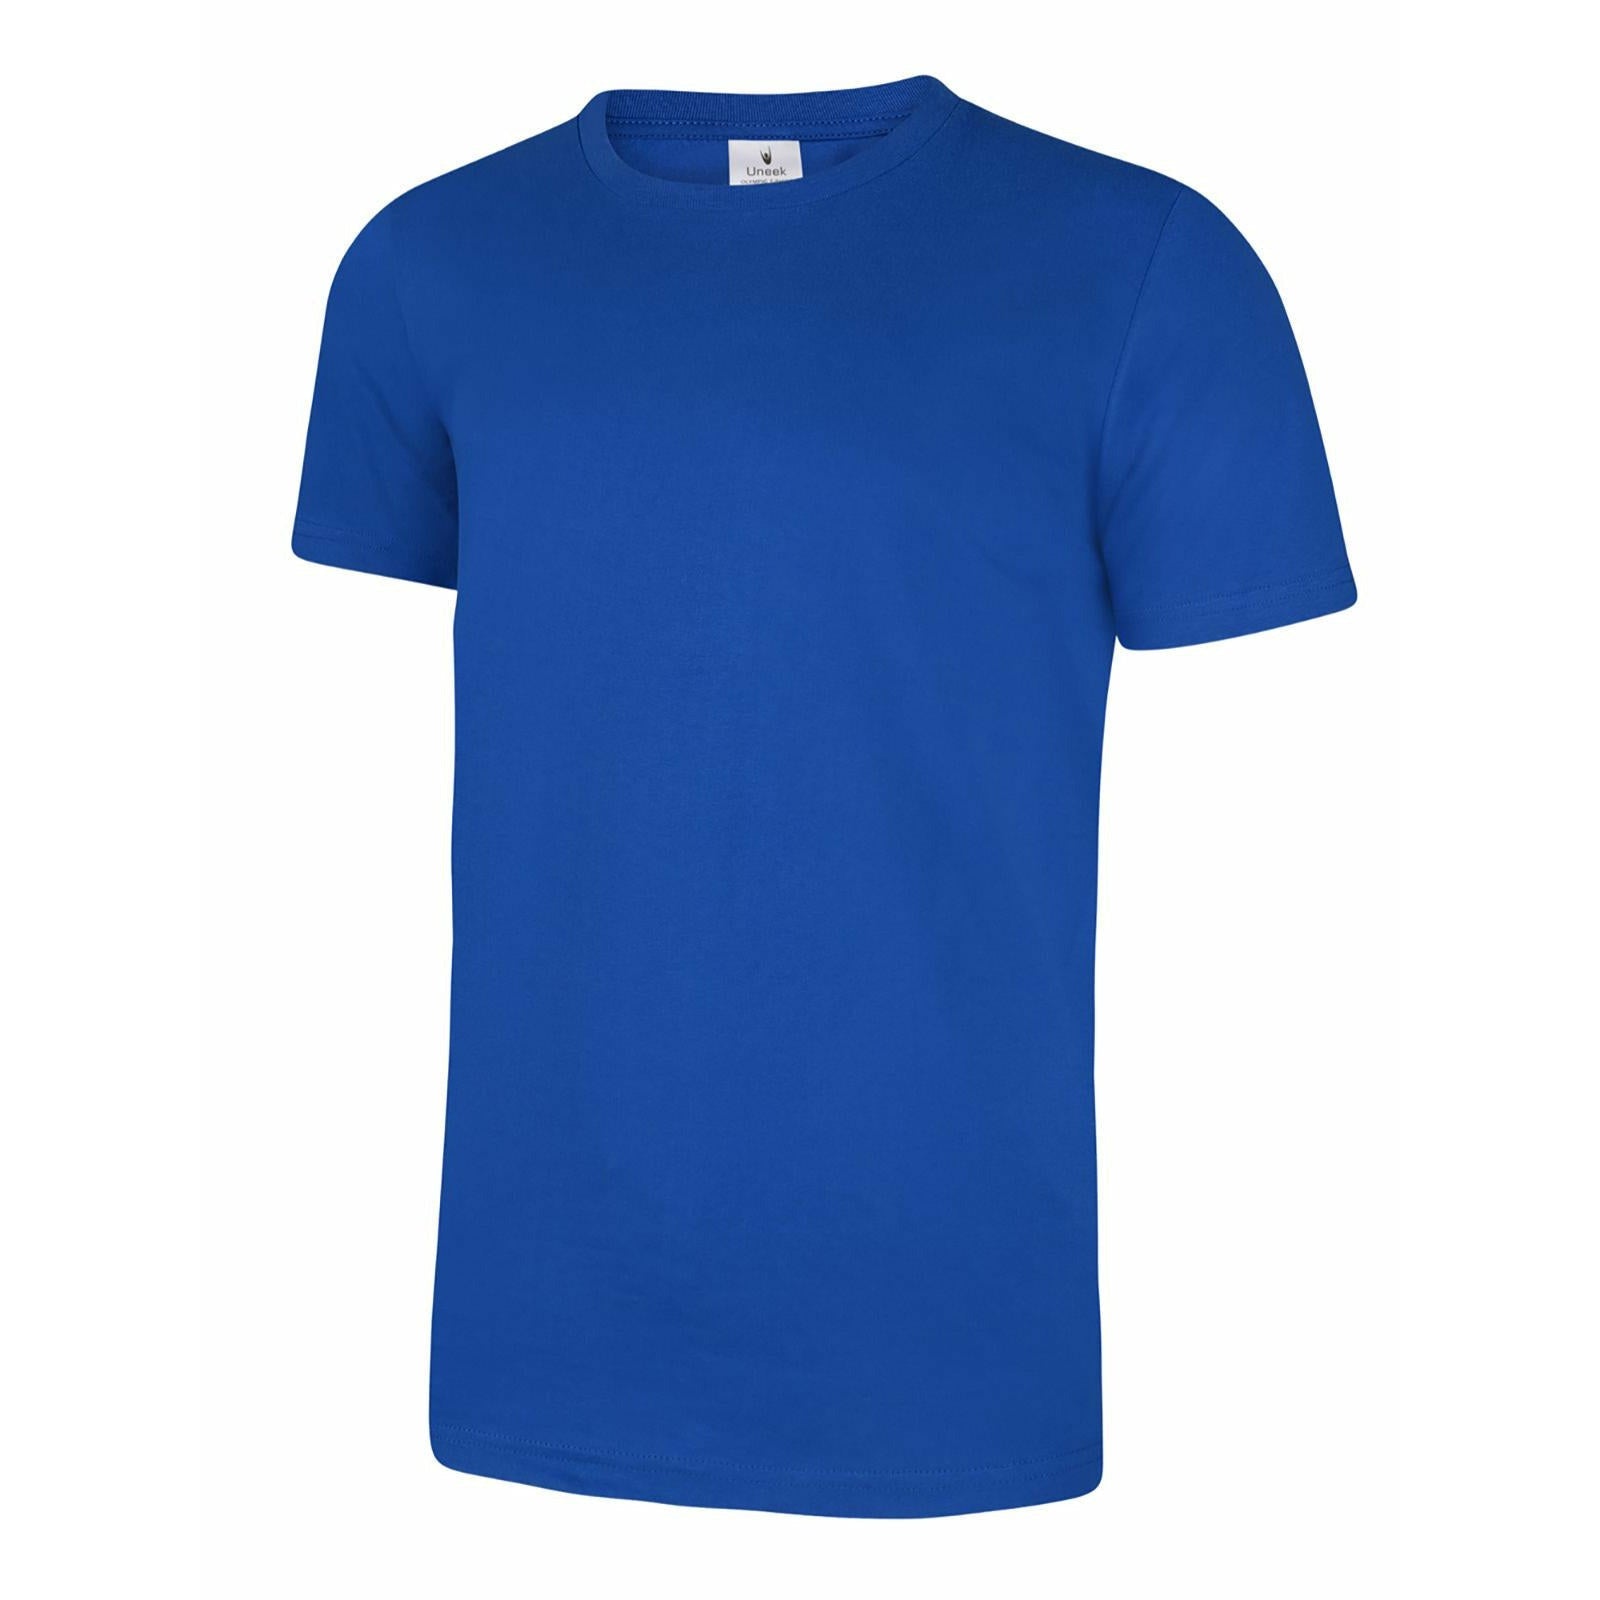 Olympic T-shirt - Royal Blue